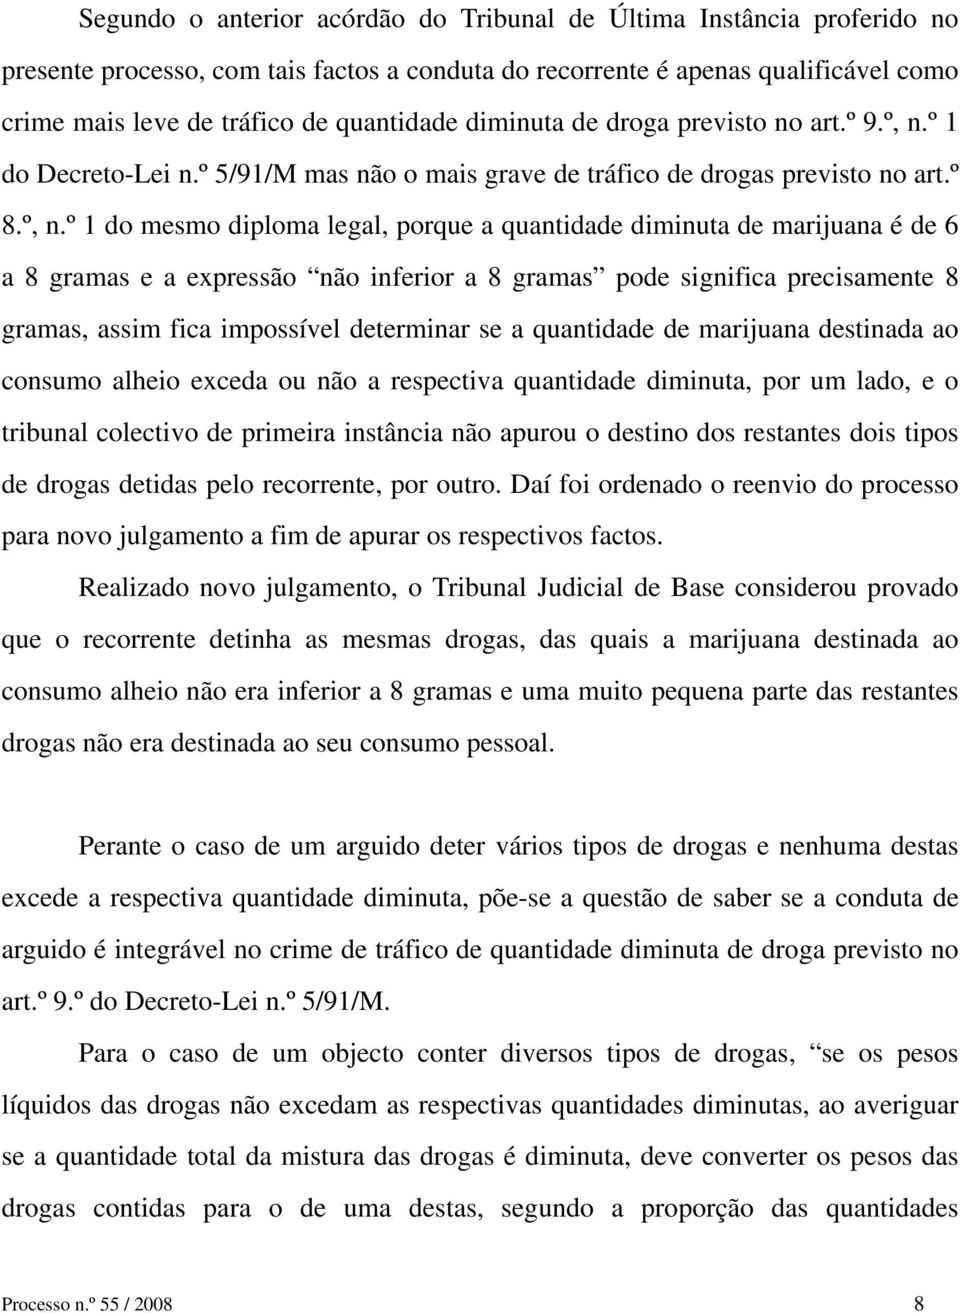 º 1 do Decreto-Lei n.º 5/91/M mas não o mais grave de tráfico de drogas previsto no art.º 8.º, n.